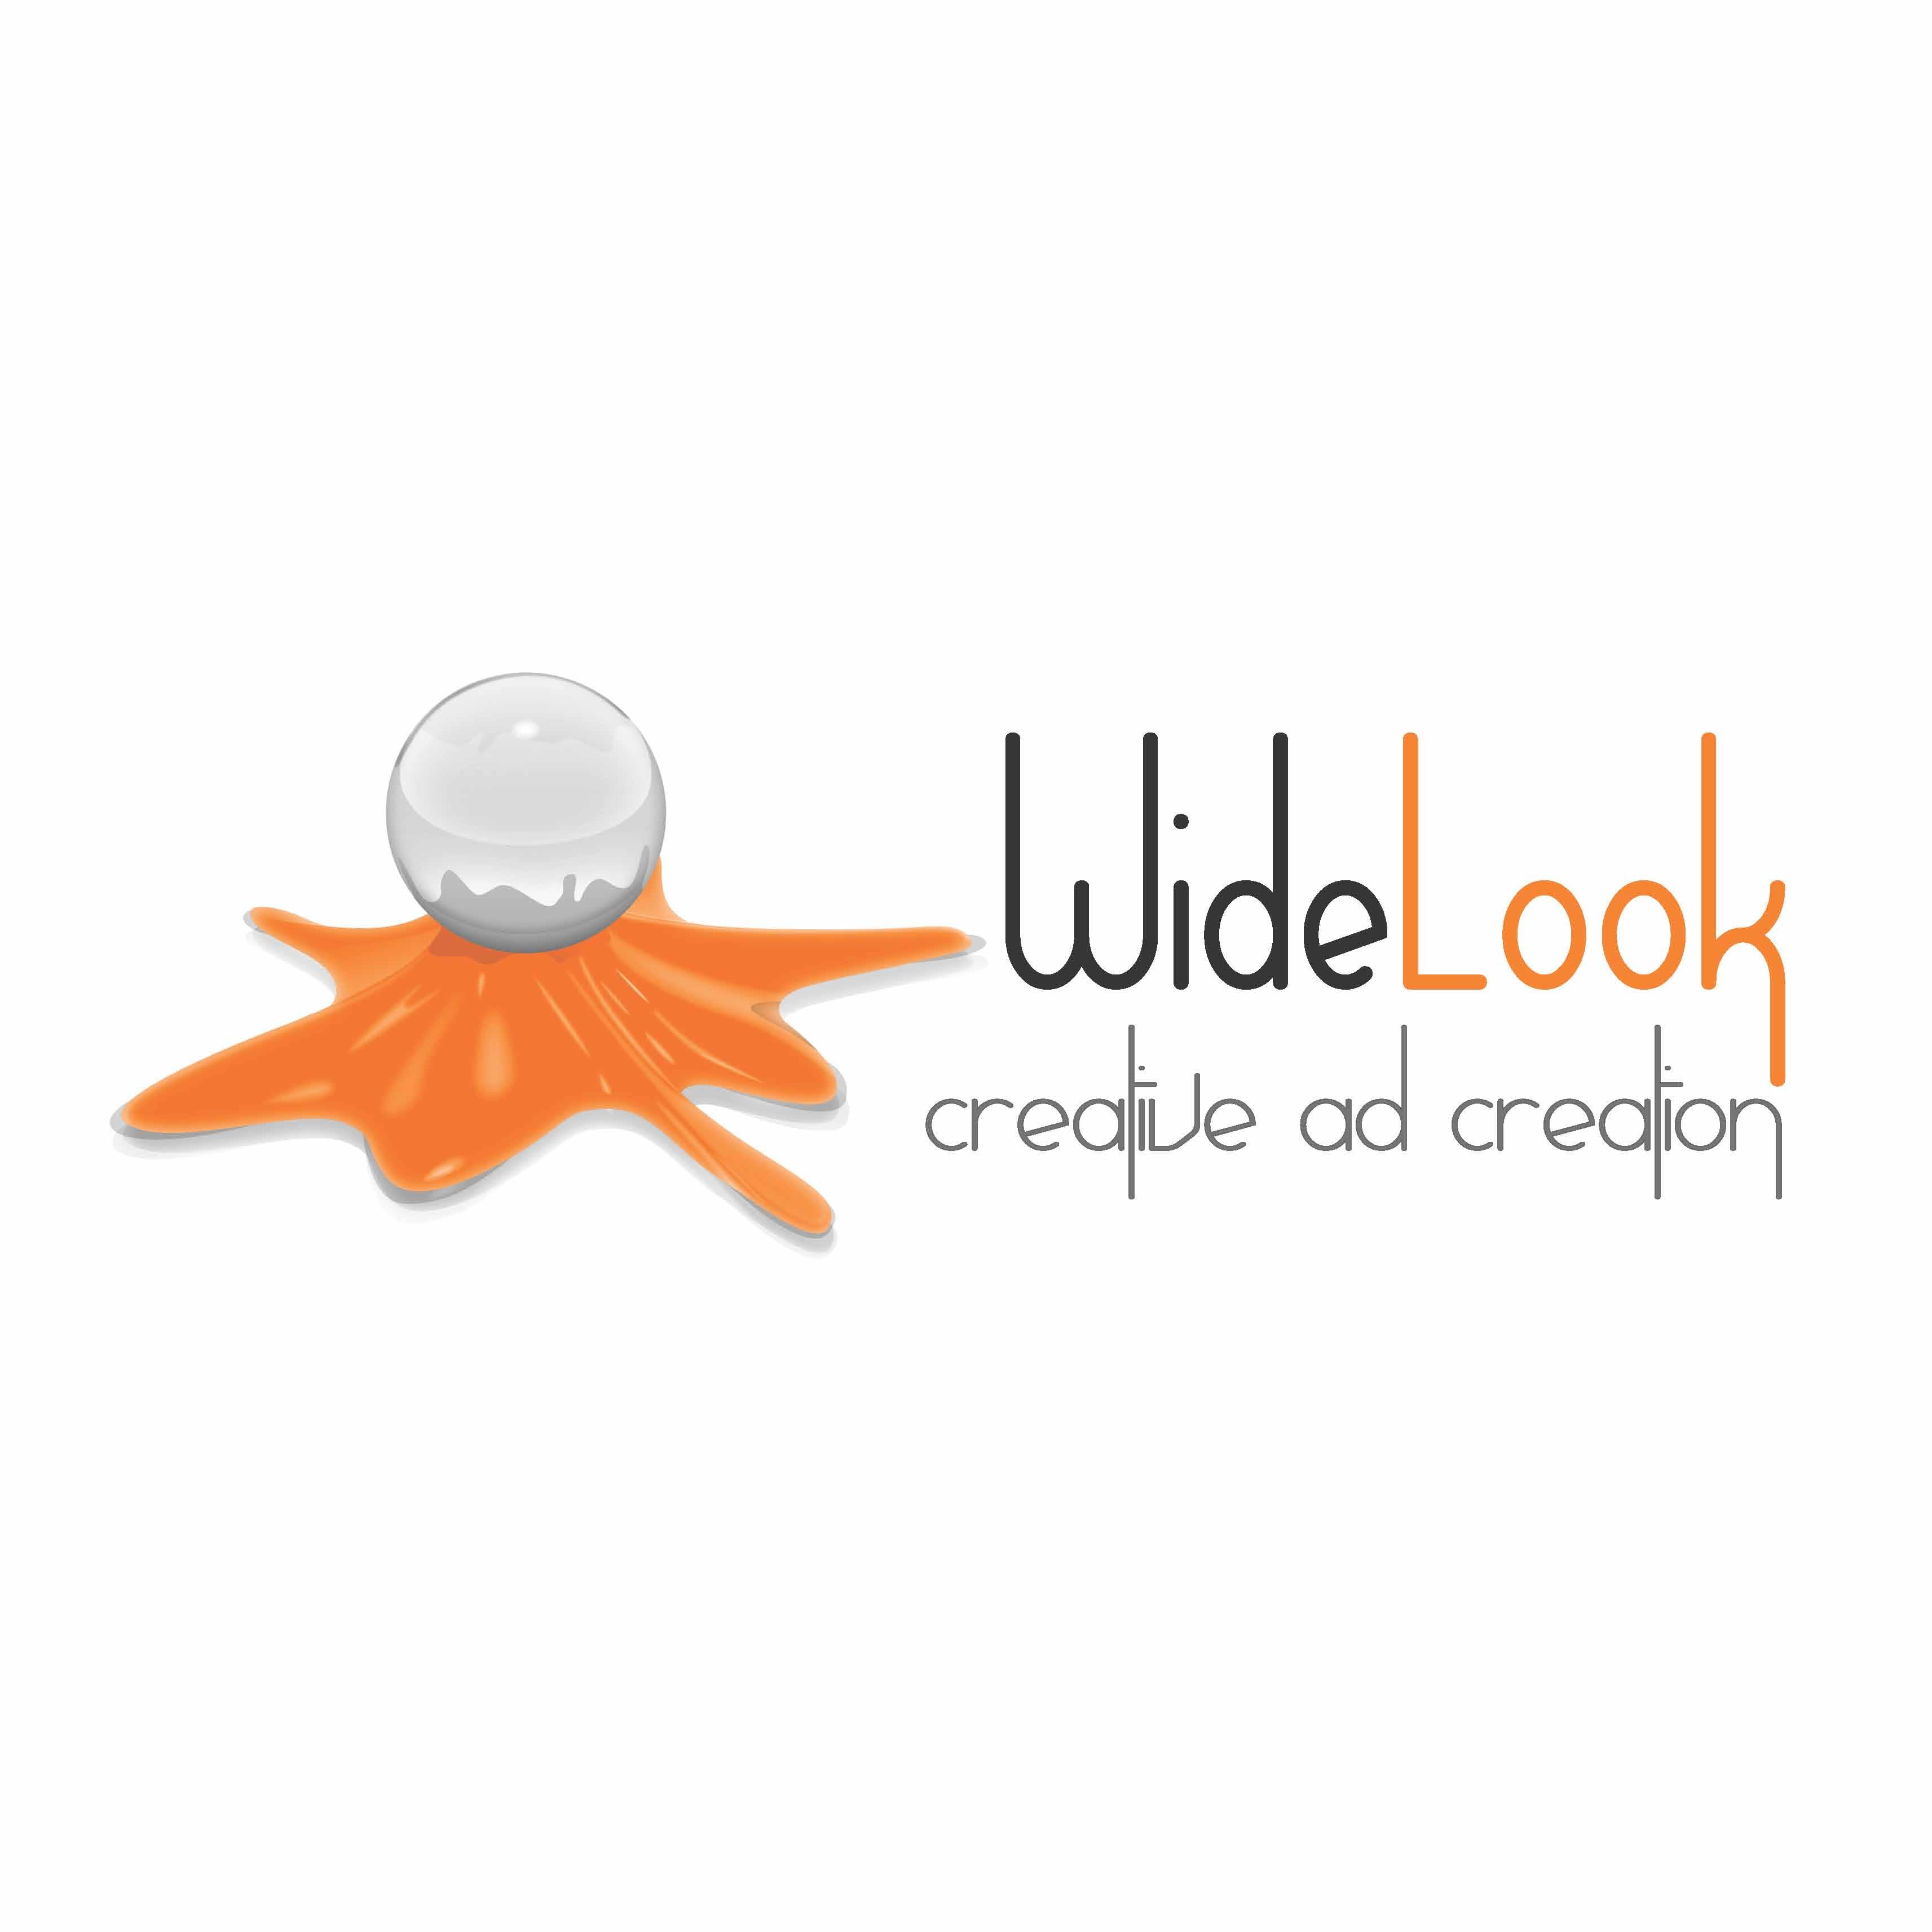 www.widelook.pl